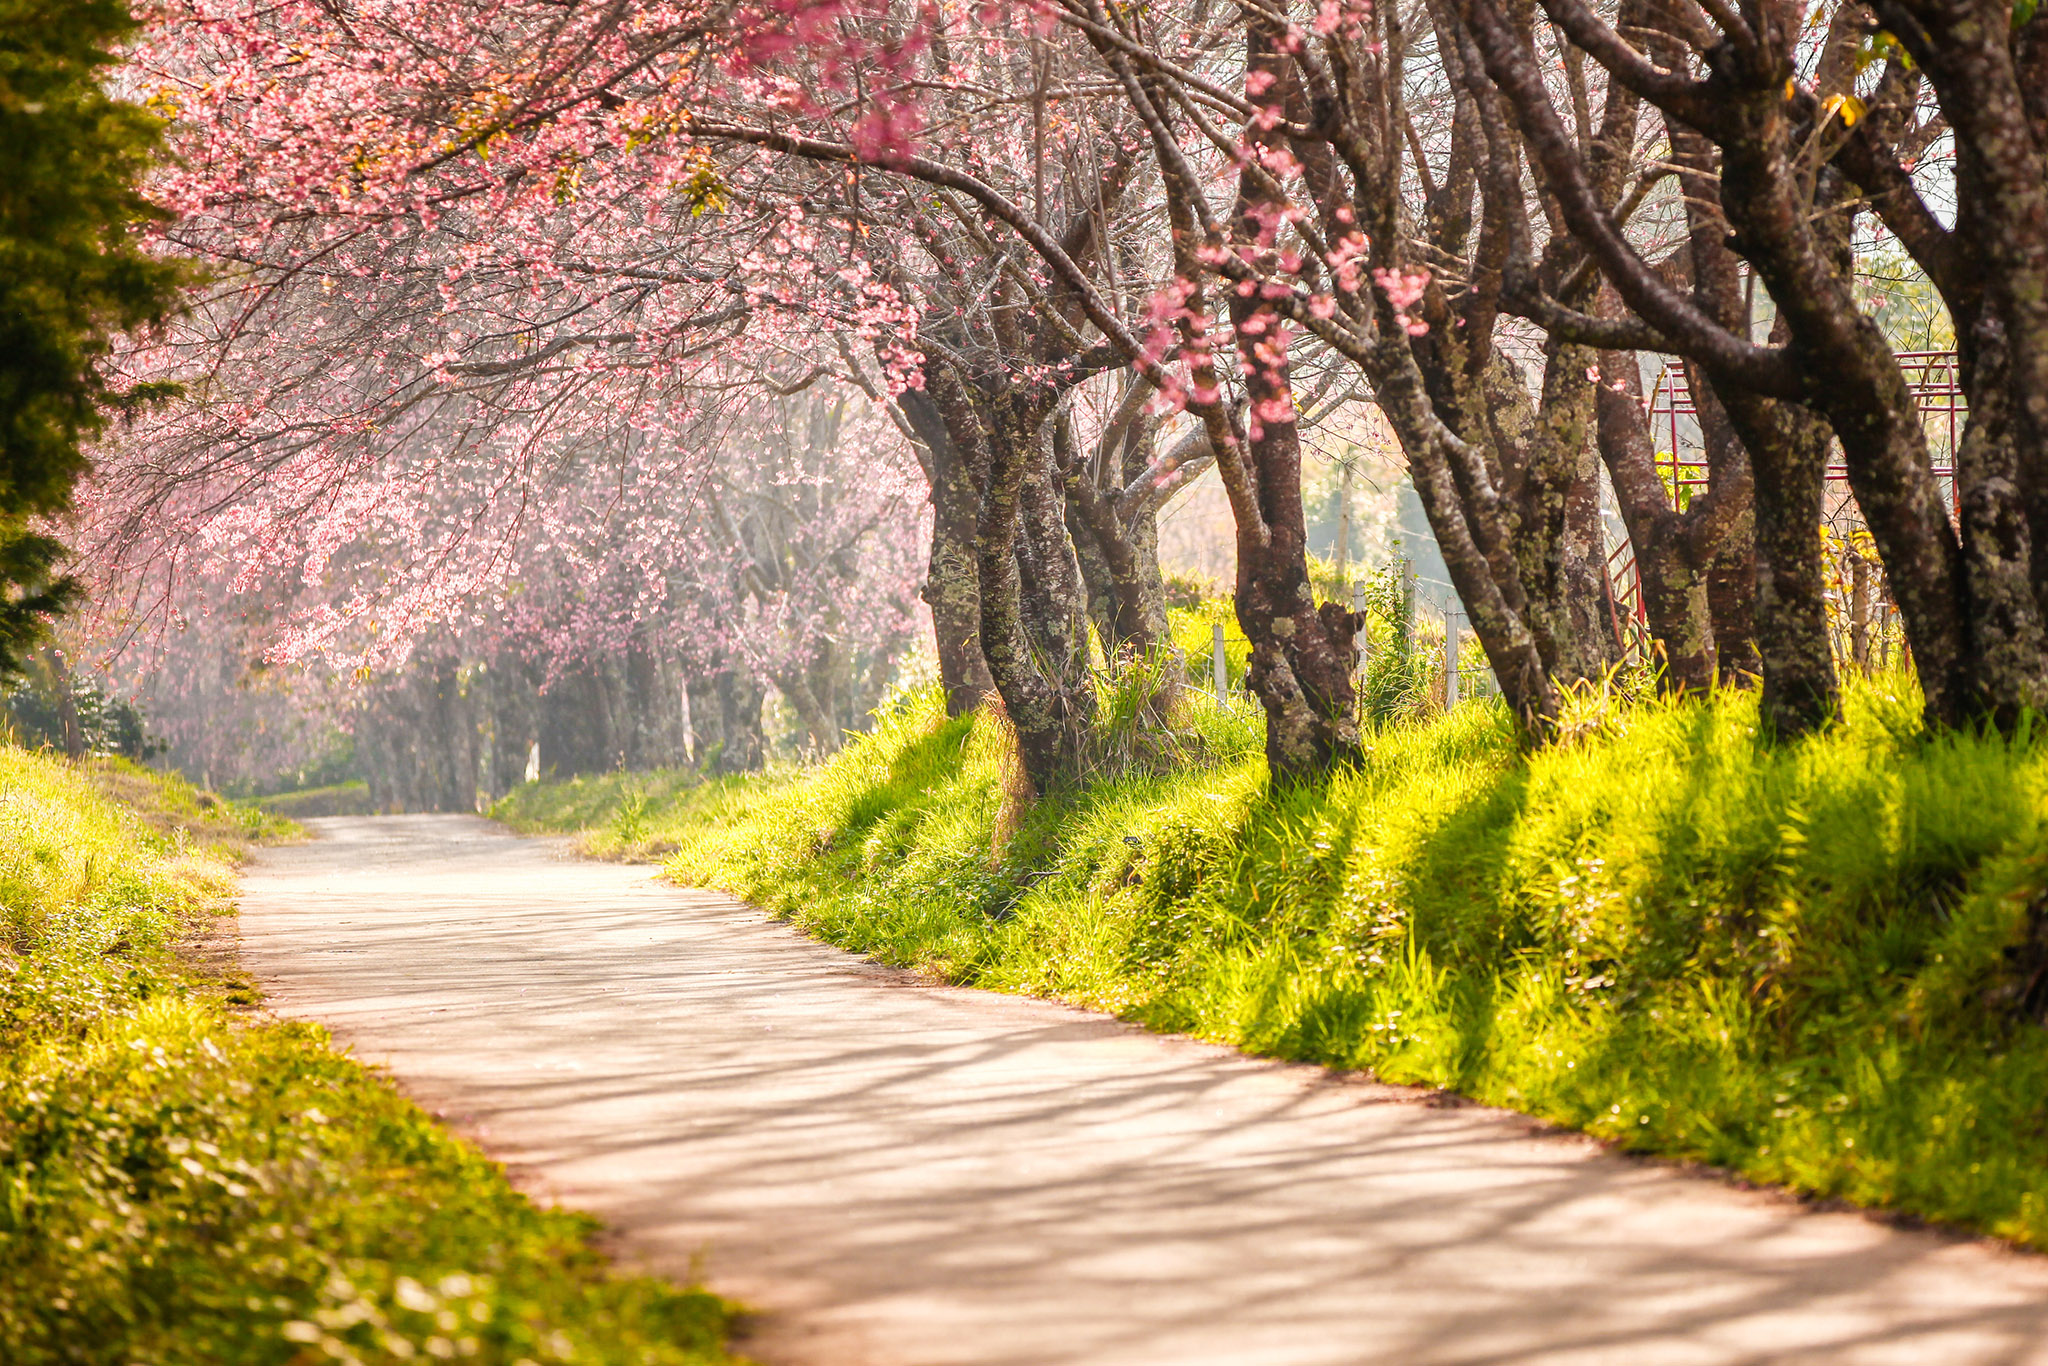 Hương Sắc Mùa Xuân: Mùa xuân đến, không khí vui tươi và rộn ràng của tiết xuân rực rỡ tràn ngập khắp các ngóc ngách đường phố. Với màu sắc của những bông hoa đua nhau nở rộ, bạn sẽ được tận hưởng hương sắc và vẻ đẹp tuyệt vời của mùa xuân.